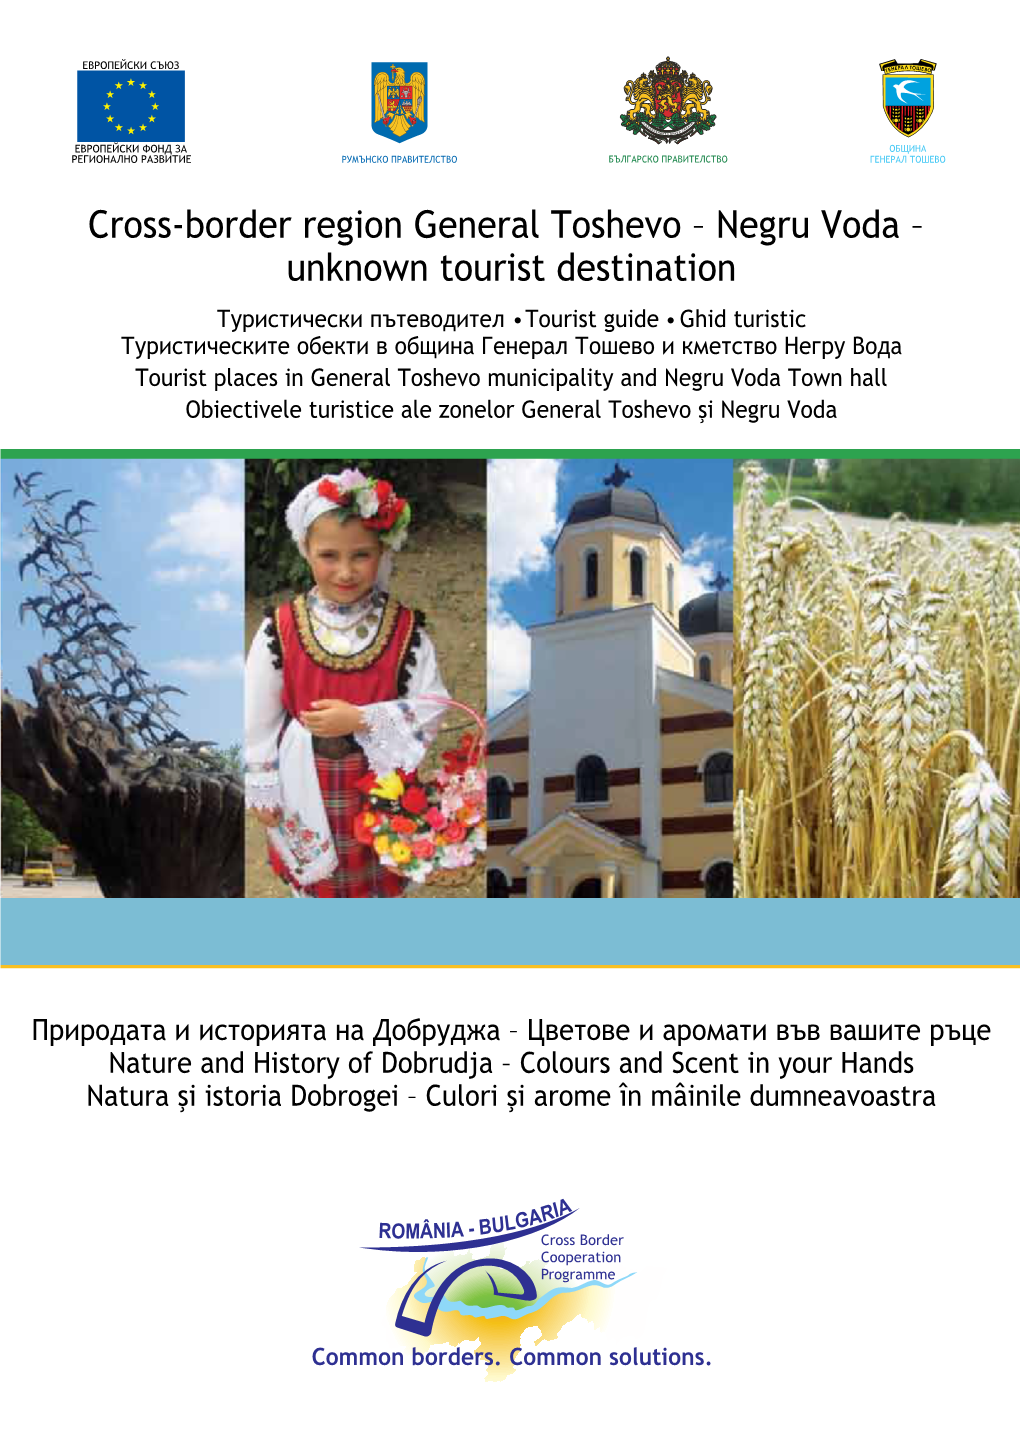 Cross-Border Region General Toshevo – Negru Voda – Unknown Tourist Destination